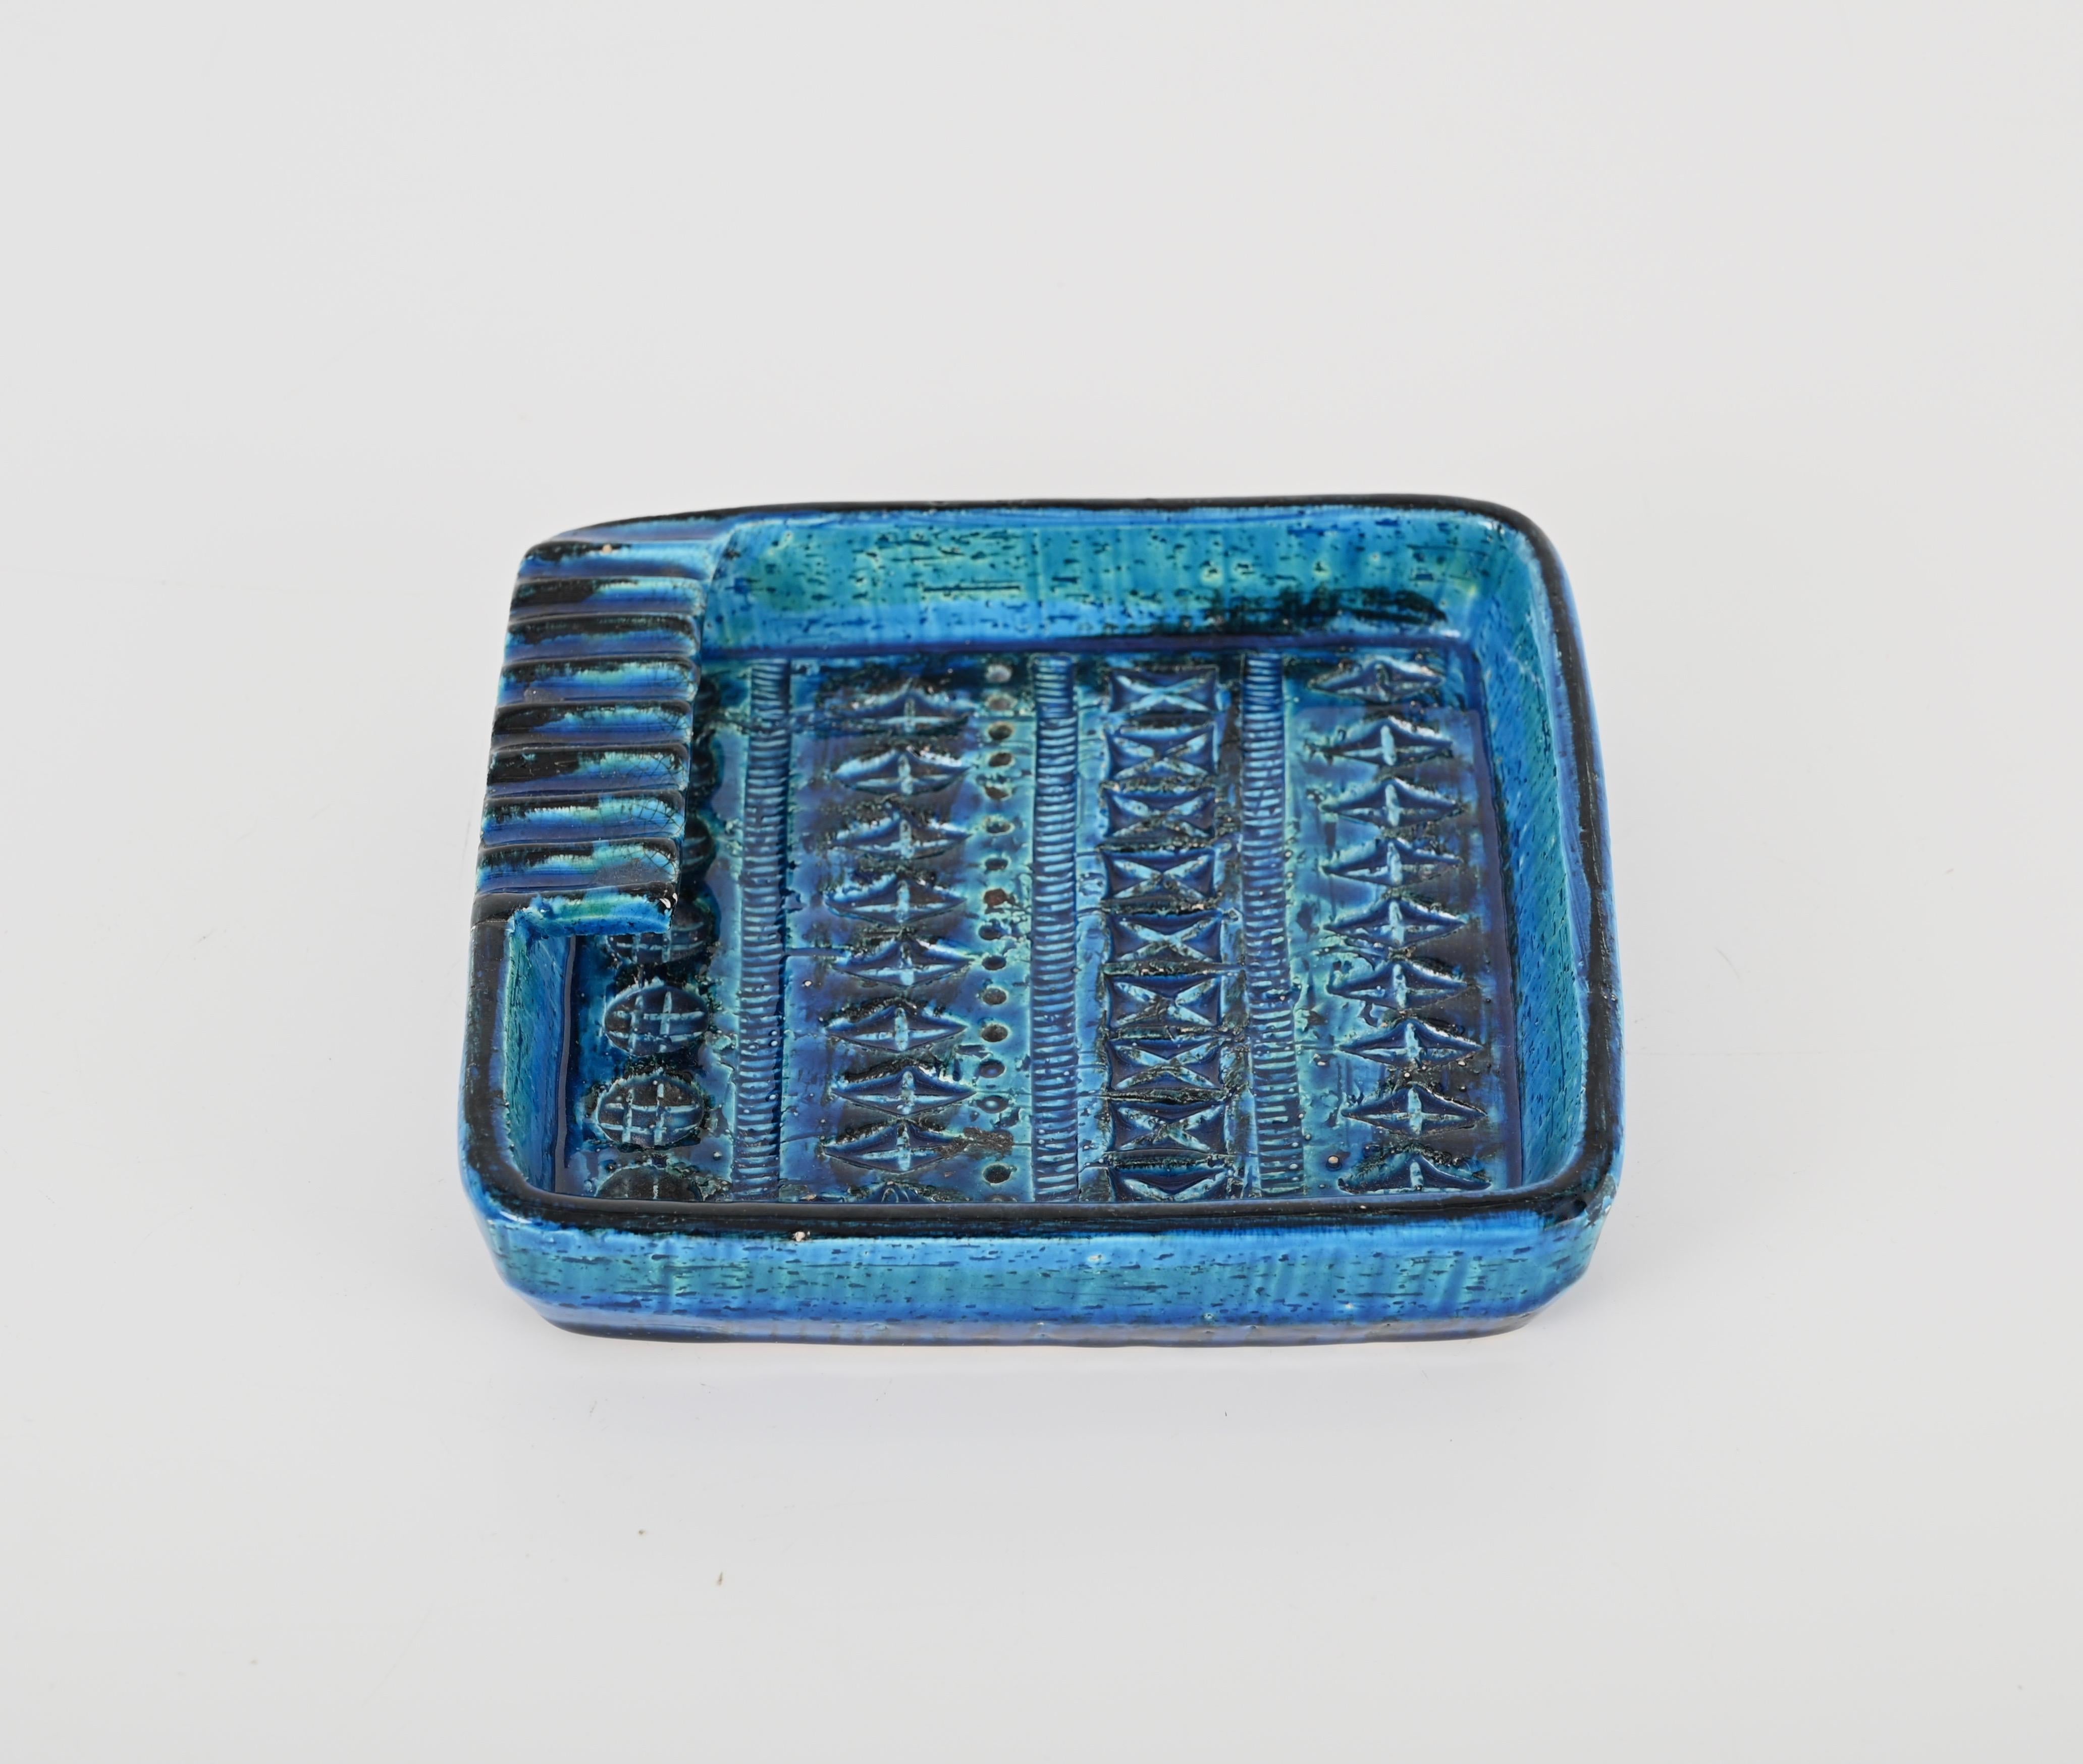 Aldo Londi for Bitossi Remini Blue Ceramic Ashtray Handcrafted in